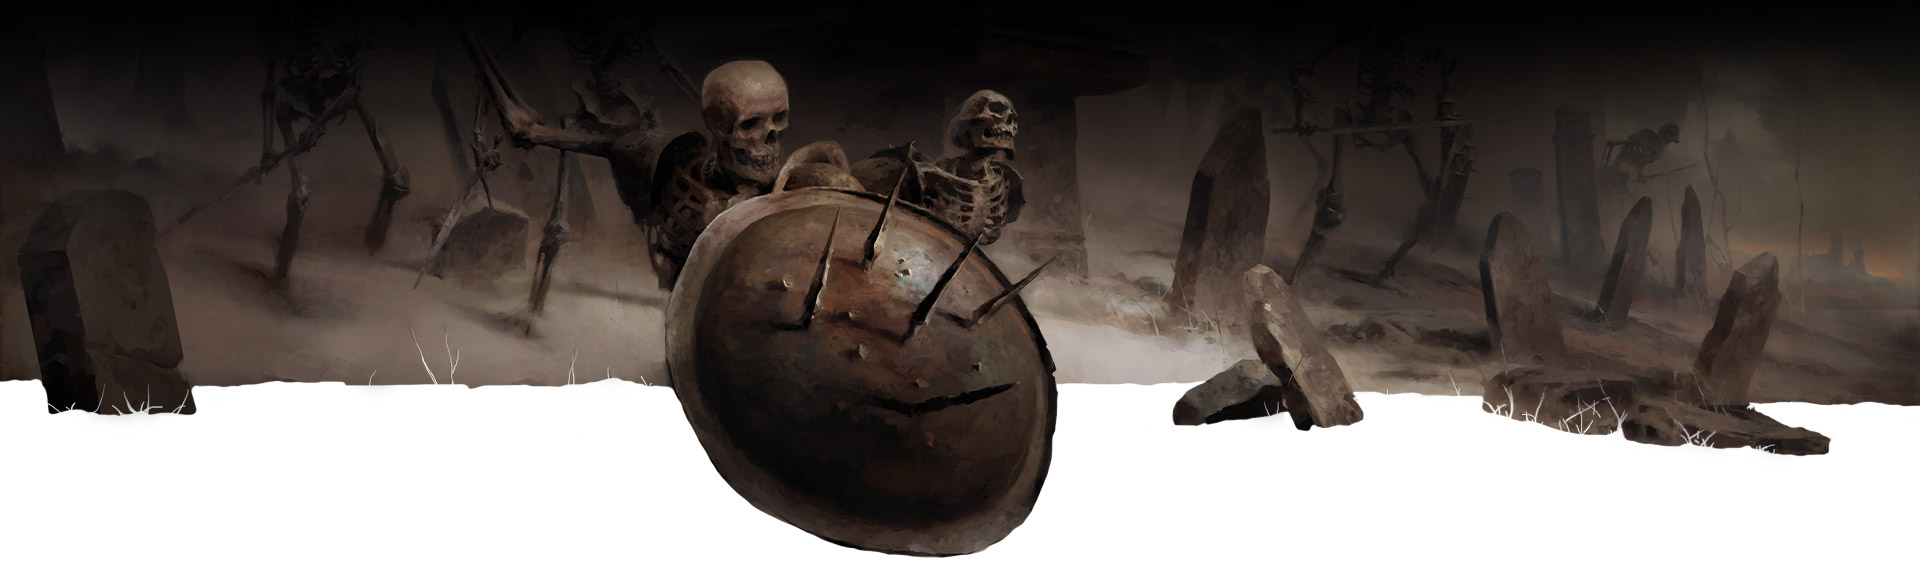 Un esqueleto detrás de un escudo y lápidas